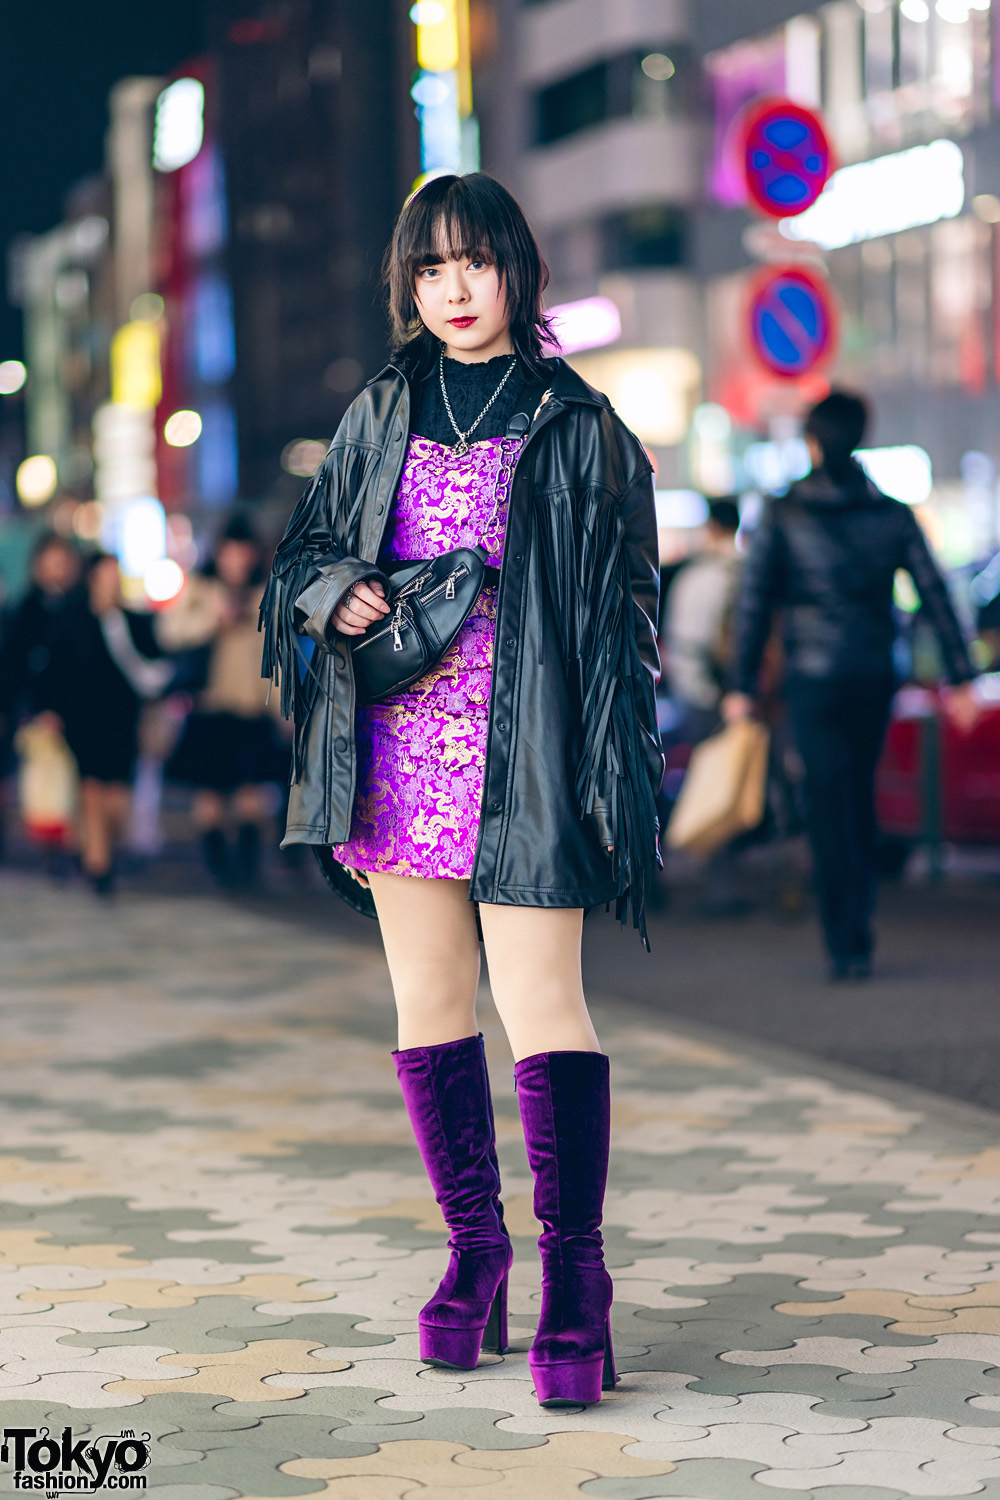 Harajuku Street Style w/ Fringe Leather Jacket, Dragon Print Dress ...